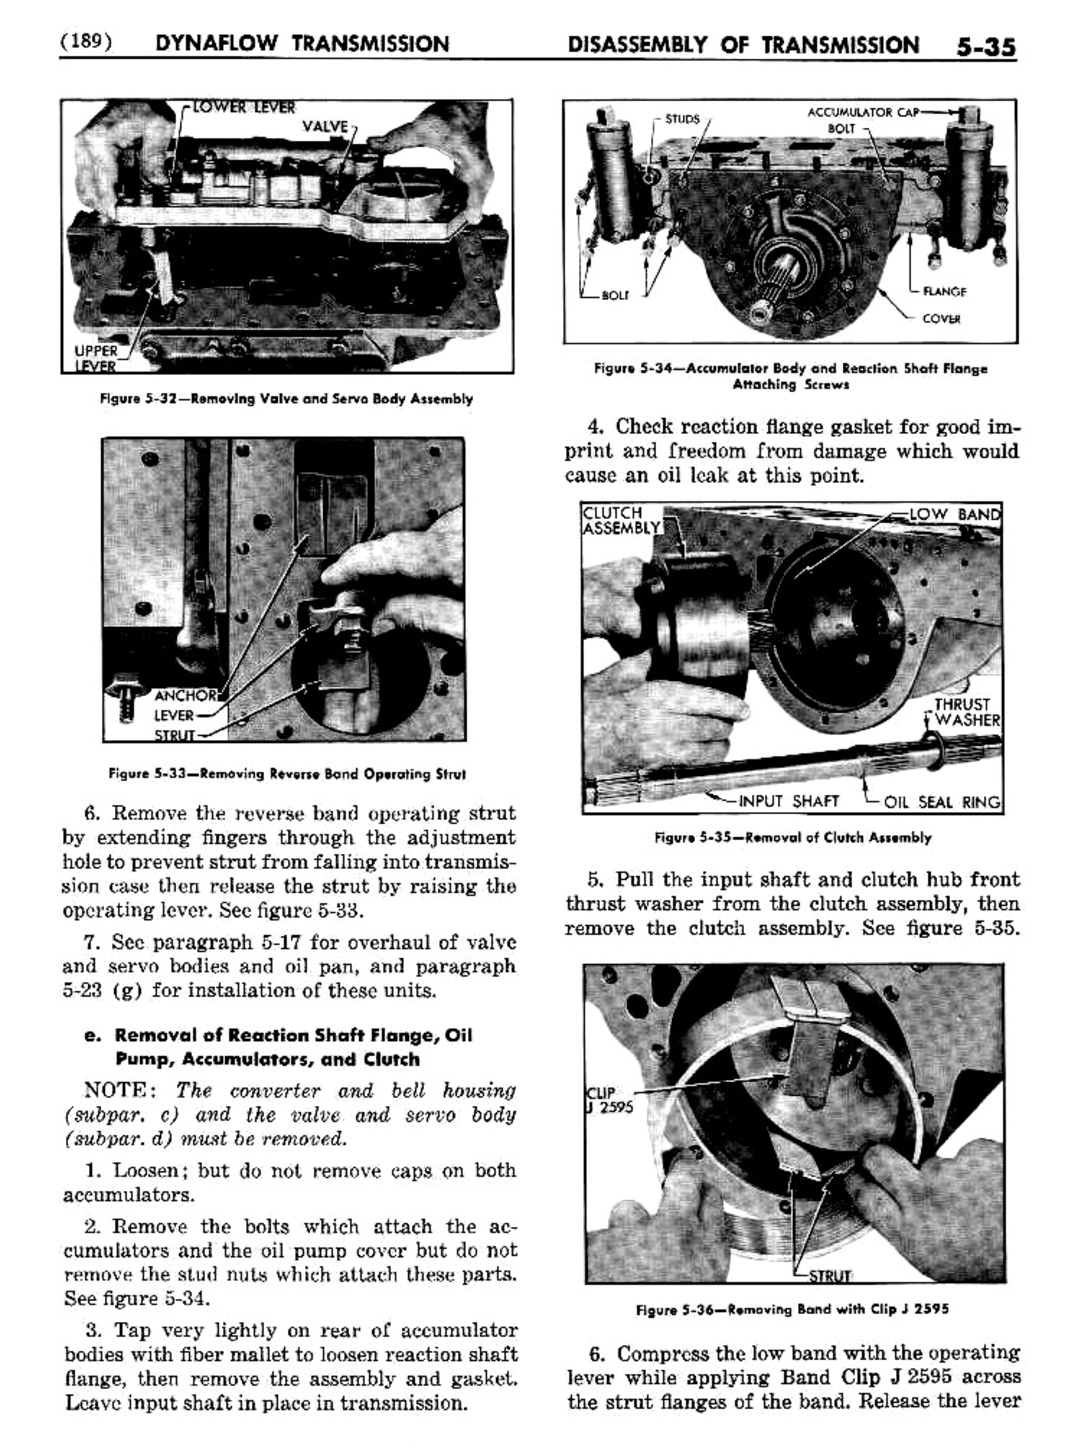 n_06 1954 Buick Shop Manual - Dynaflow-035-035.jpg